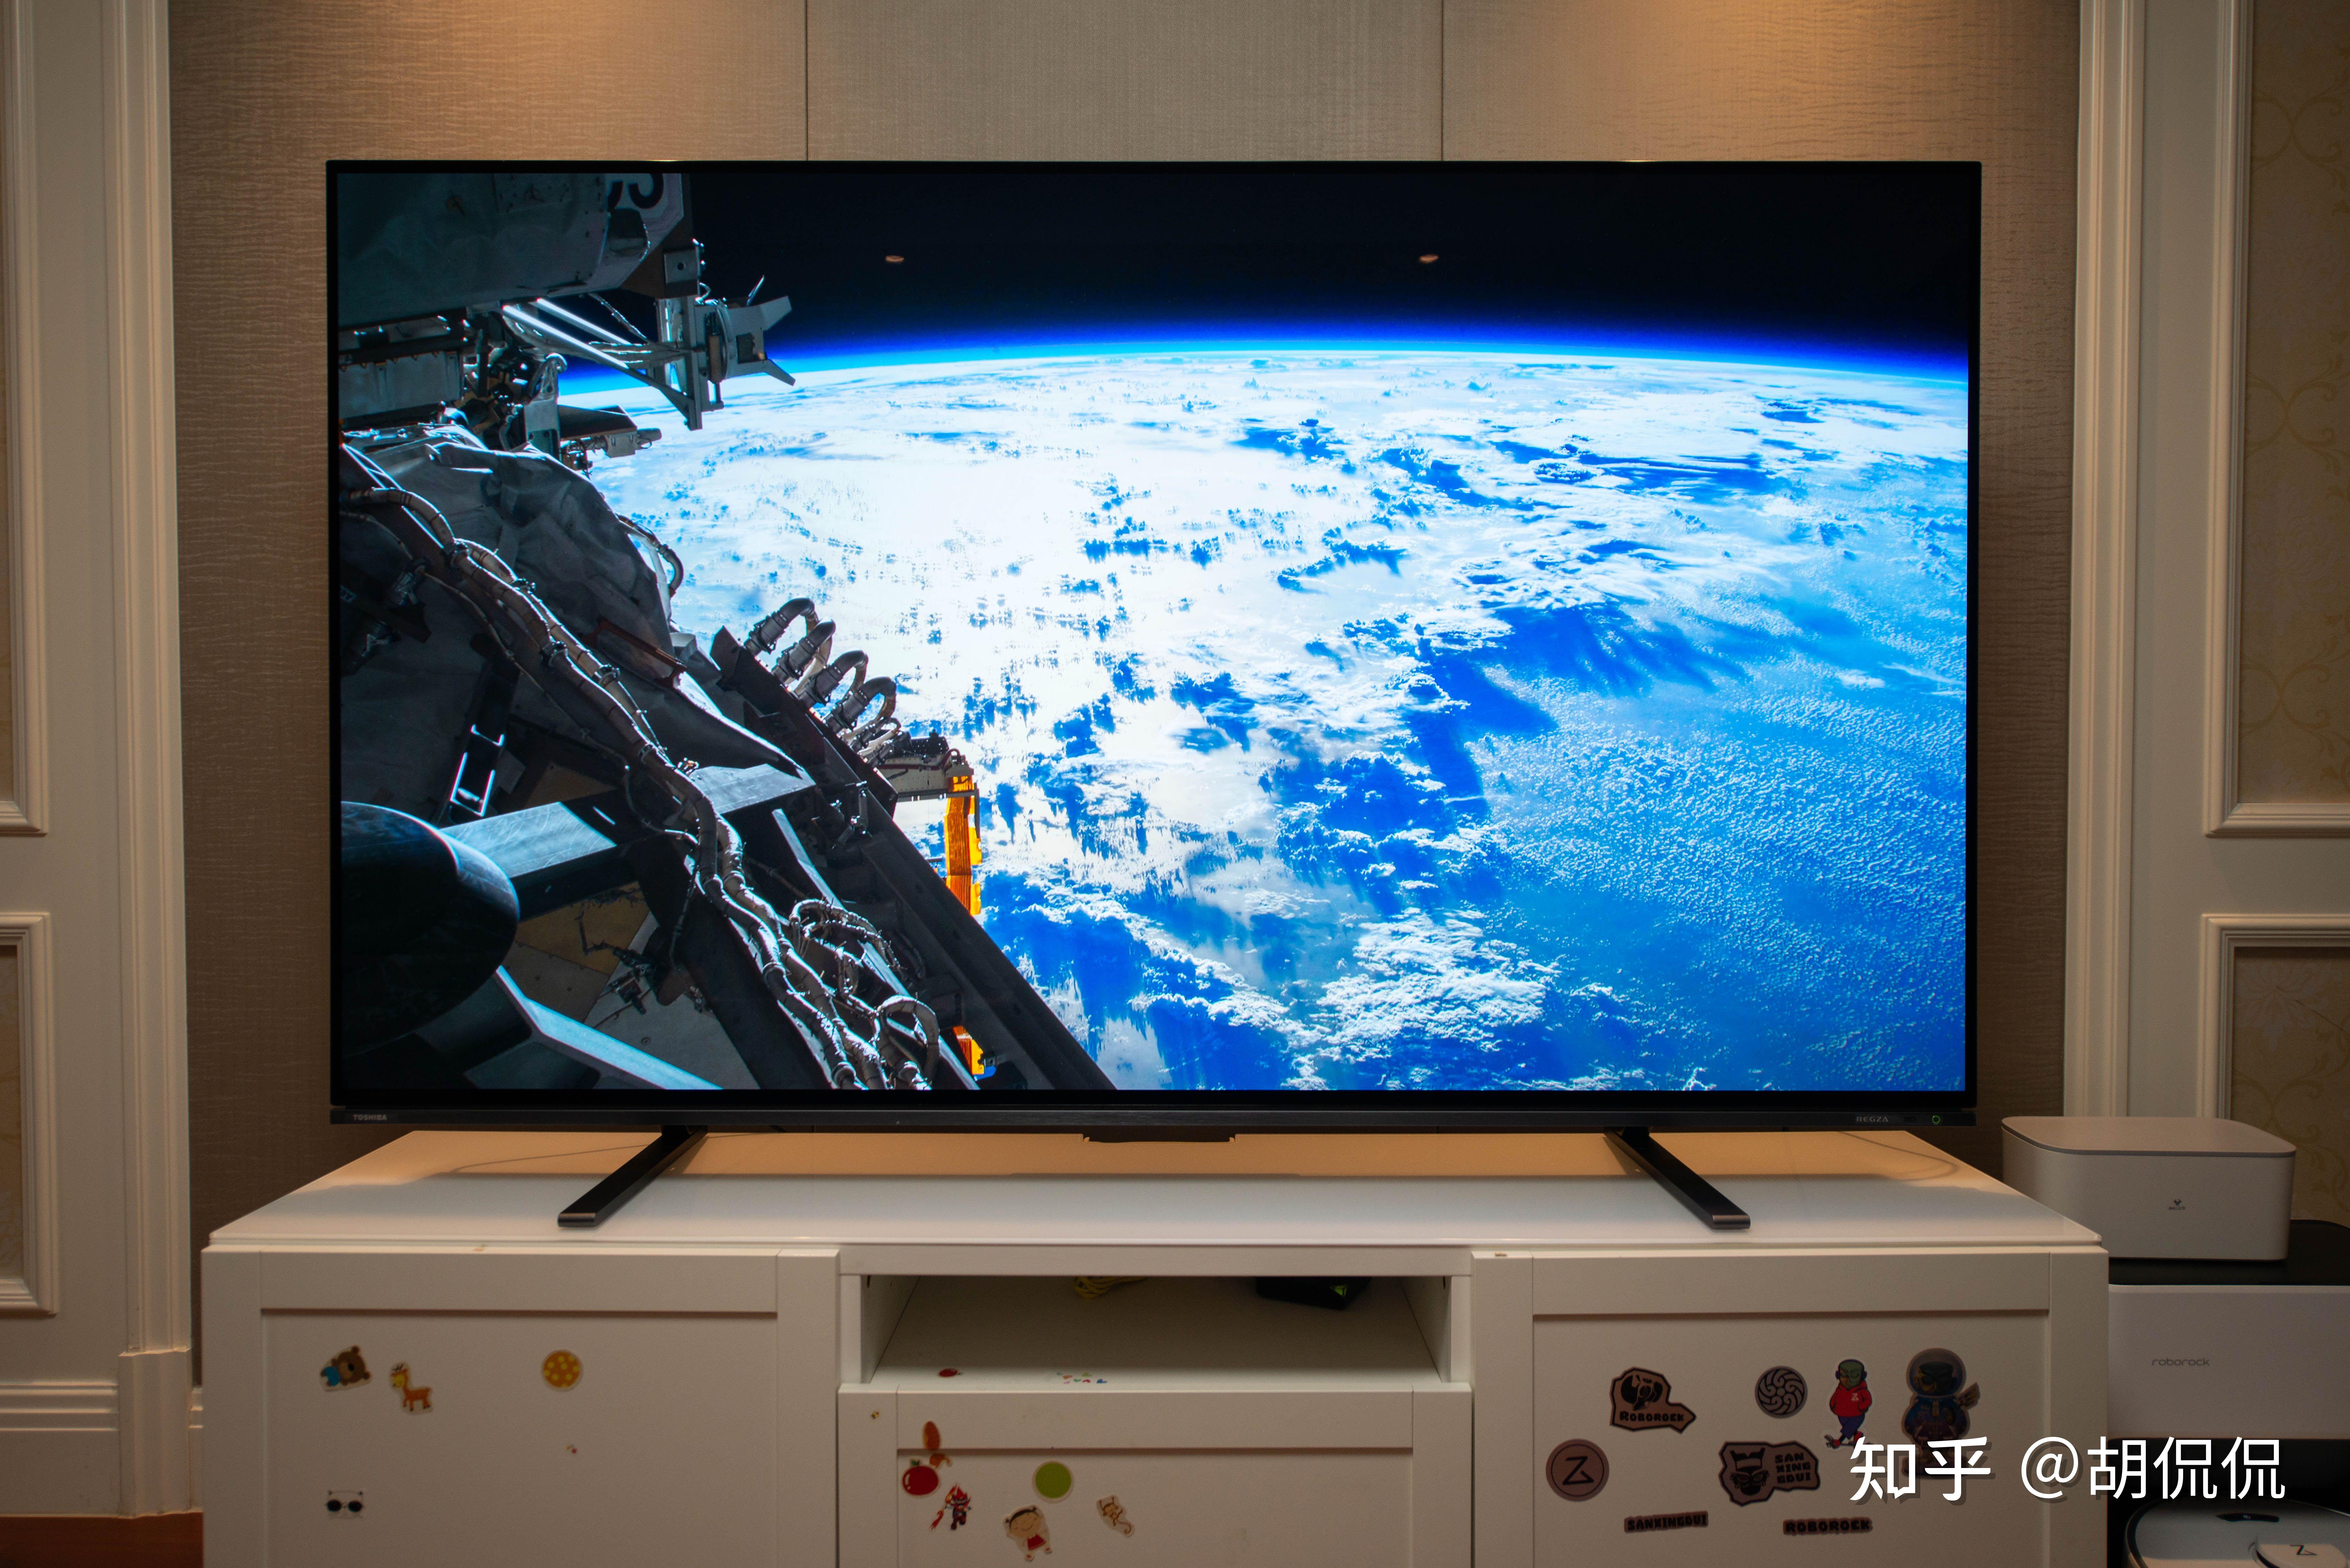 来看看两万五的4k超高清77英寸oled电视,东芝x8900kf 